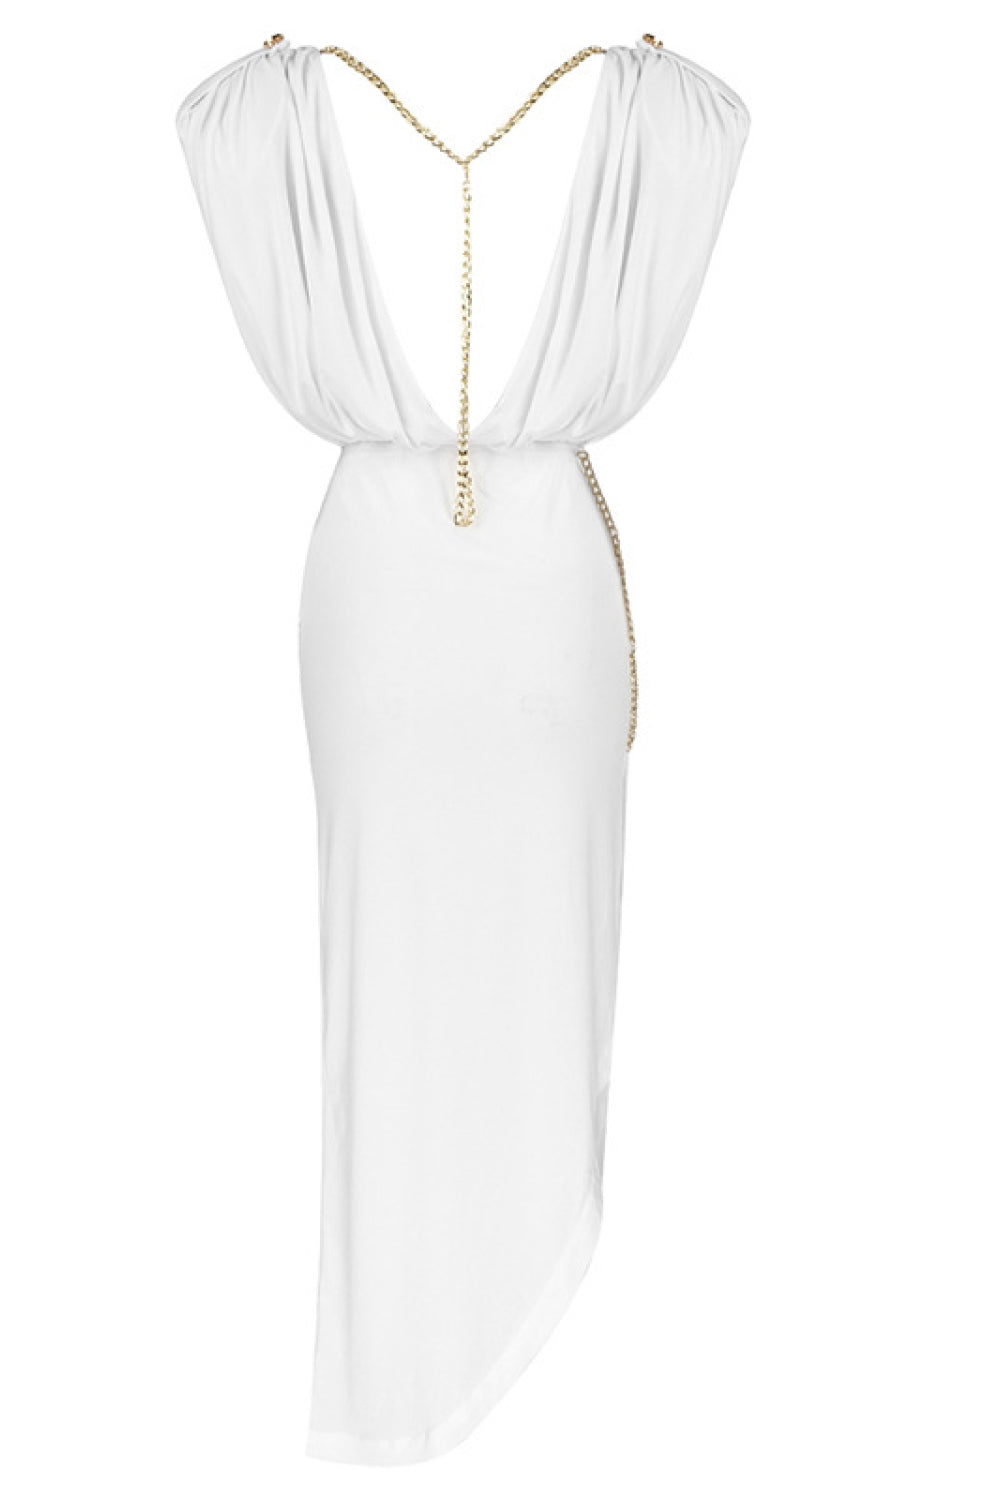 Cap-Sleeve V-Back Chain Detail Asymmetrical Dress - WESTHUNDRED